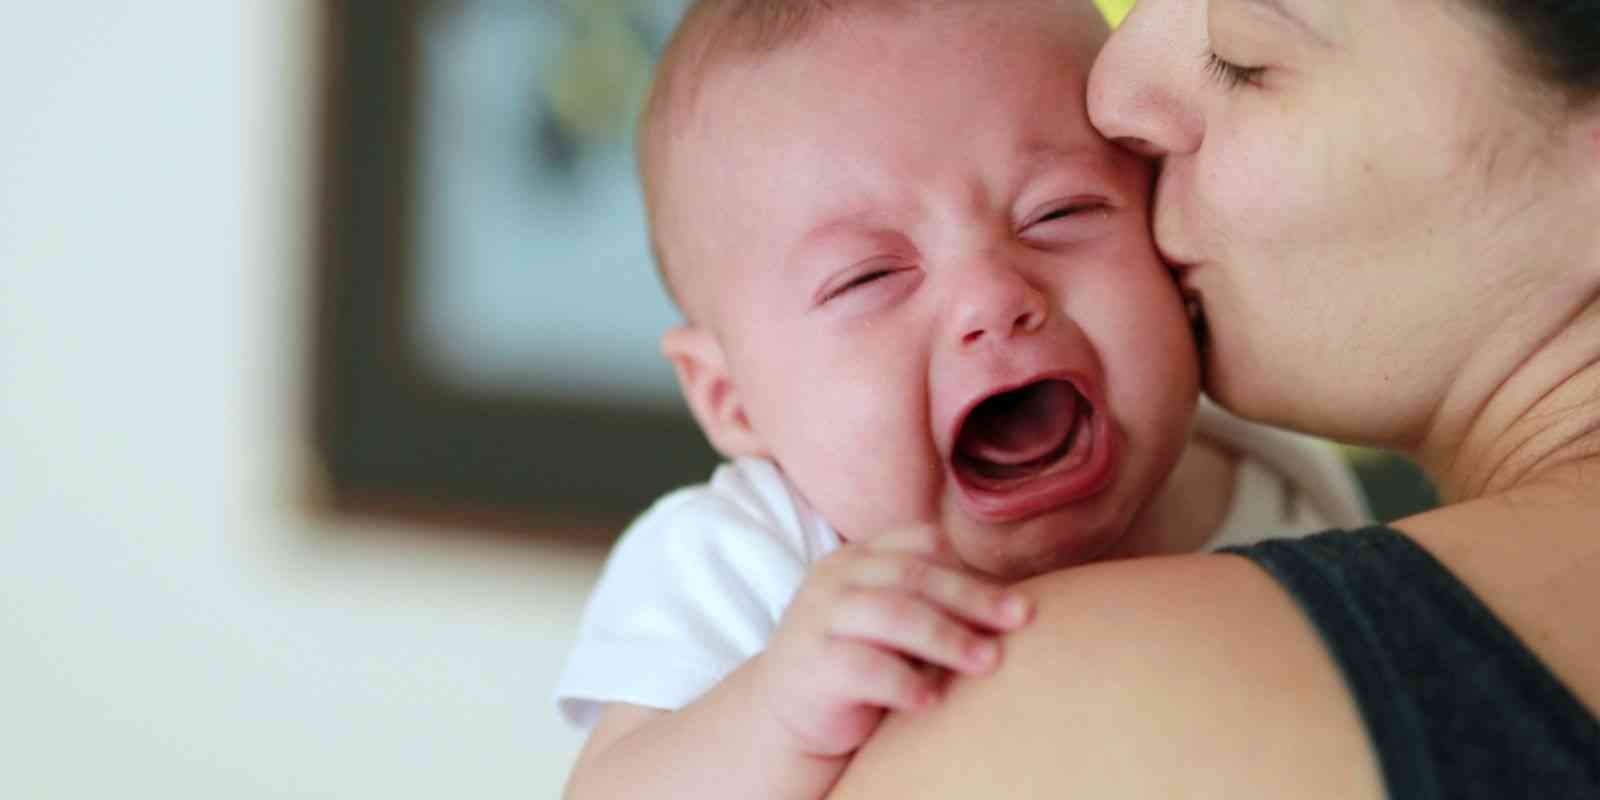 Bebeğinizin ağlaması stresinize bağlı olabilir #istanbul